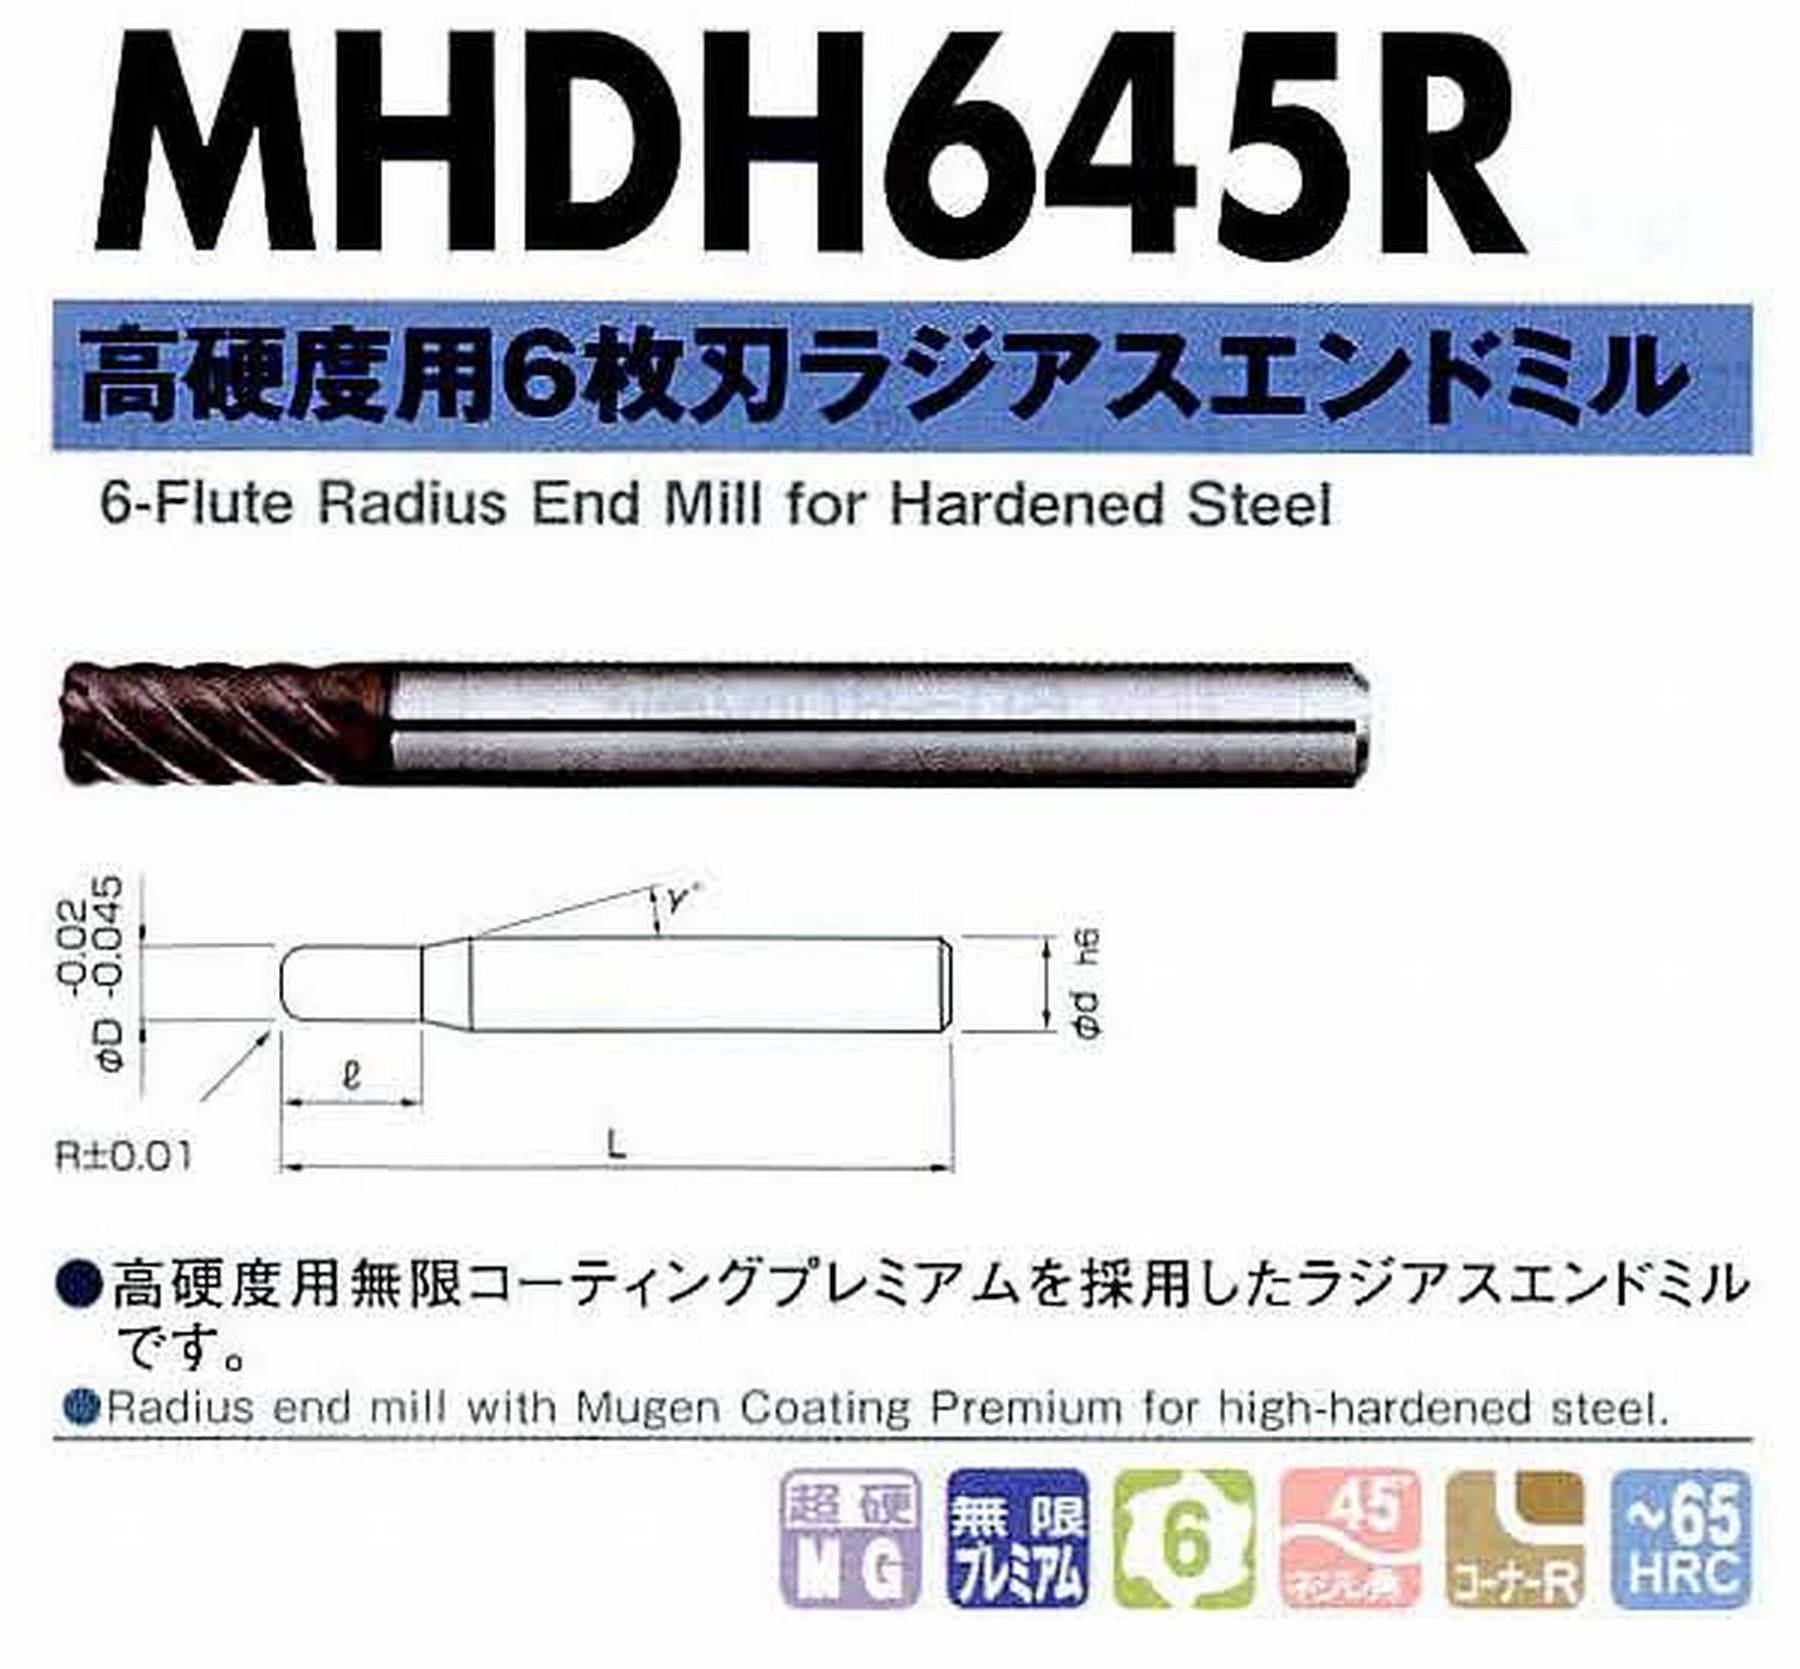 NS 日進工具 MHDH645R 高硬度用6枚刃ラジアスエンドミル コードNO．08-00438-05005 刃径5 刃長10 コーナー半径R0.5 首角12° シャンク径6mm 全長60